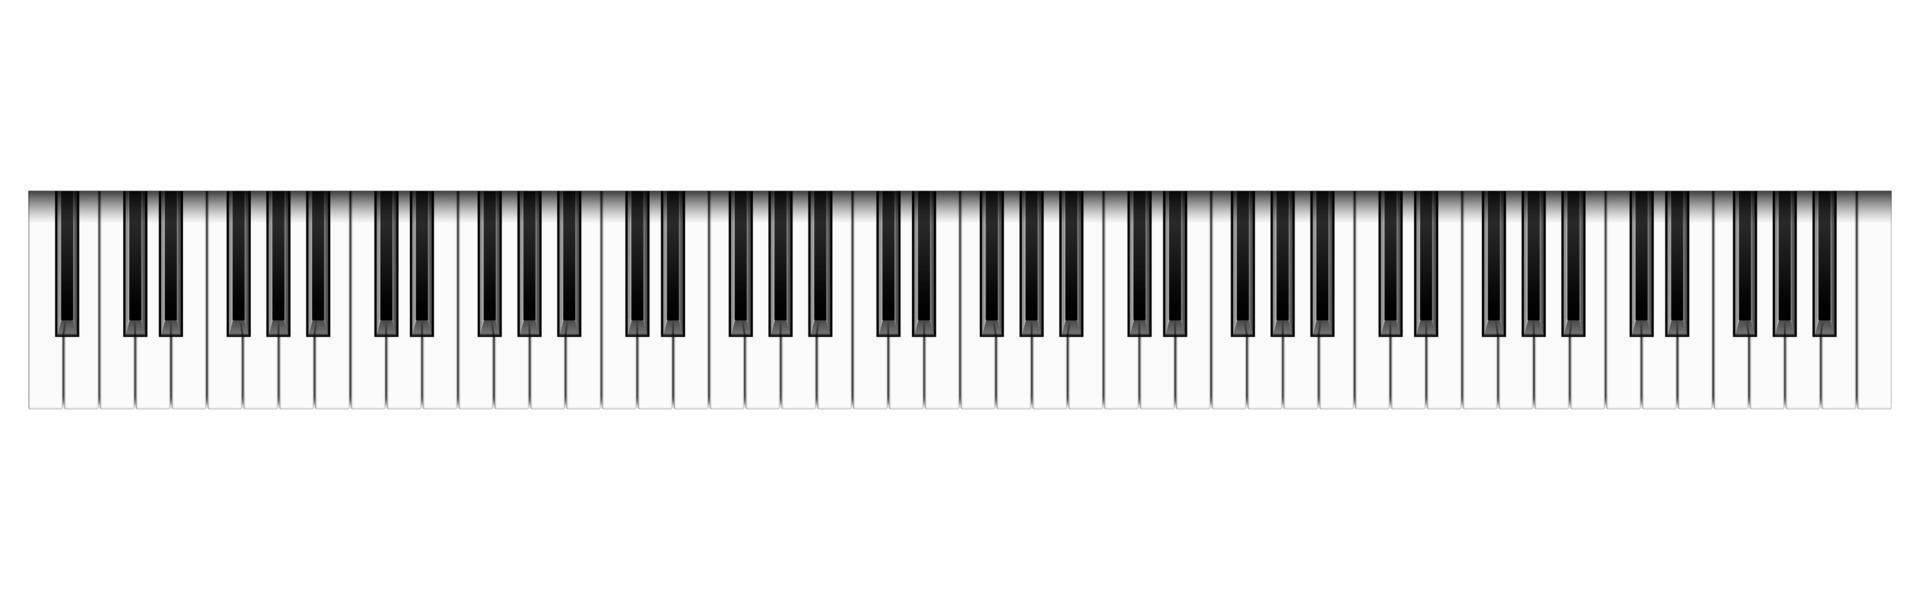 realistiska 88 pianotangenter, vektorillustration vektor